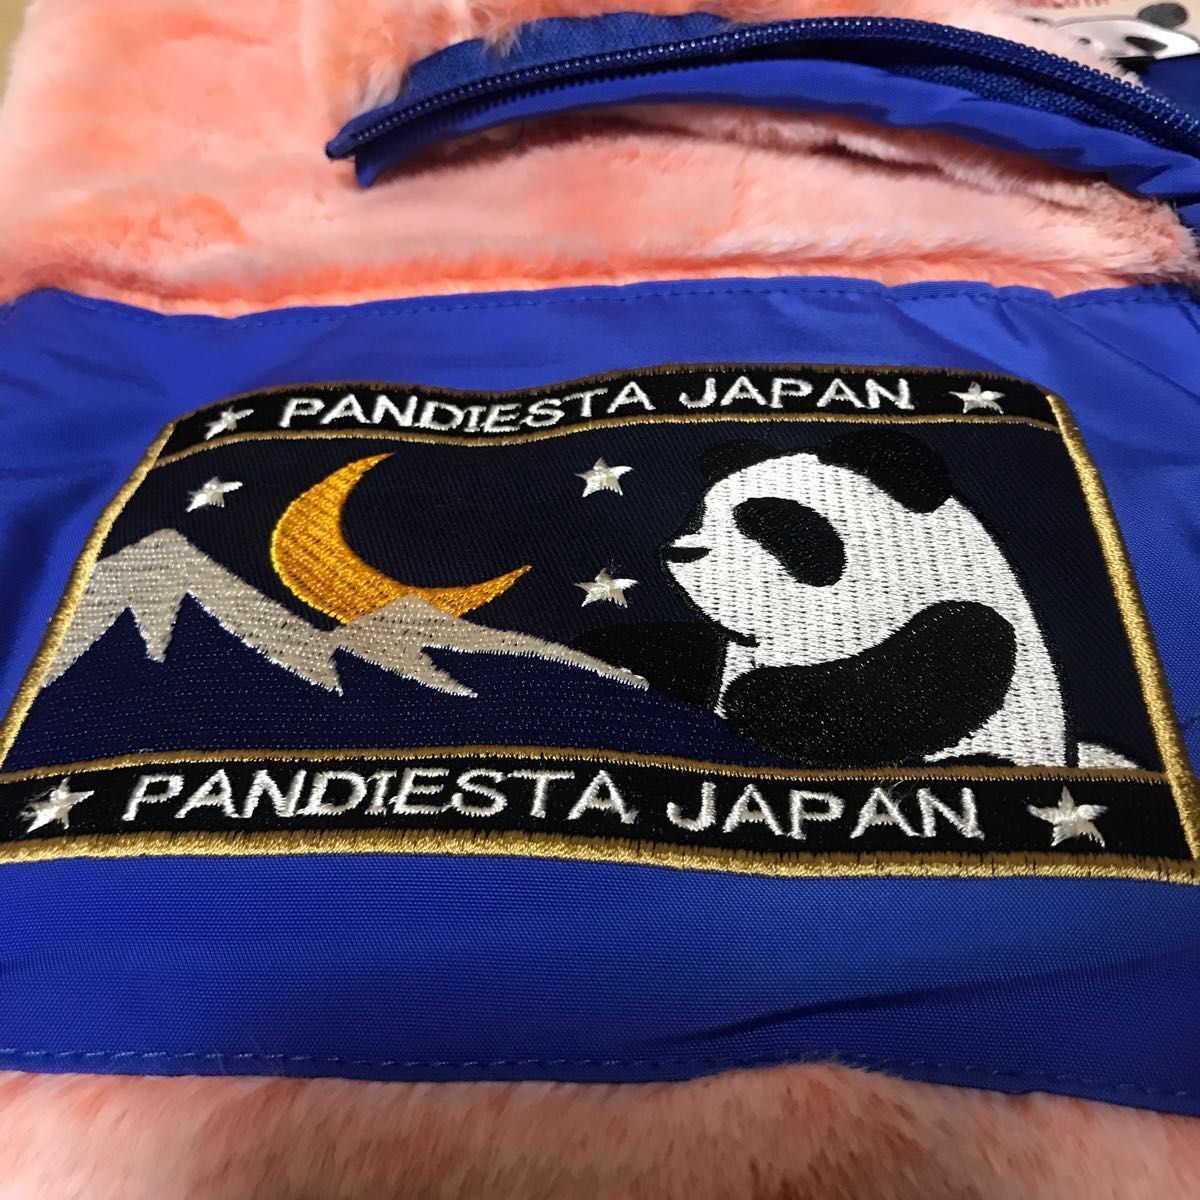 パンディエスタ PANDIESTA フェイクファーベスト パンダ 熊猫 メンズ 錦パンダ 和柄 530209 超絶美品(o^^o)